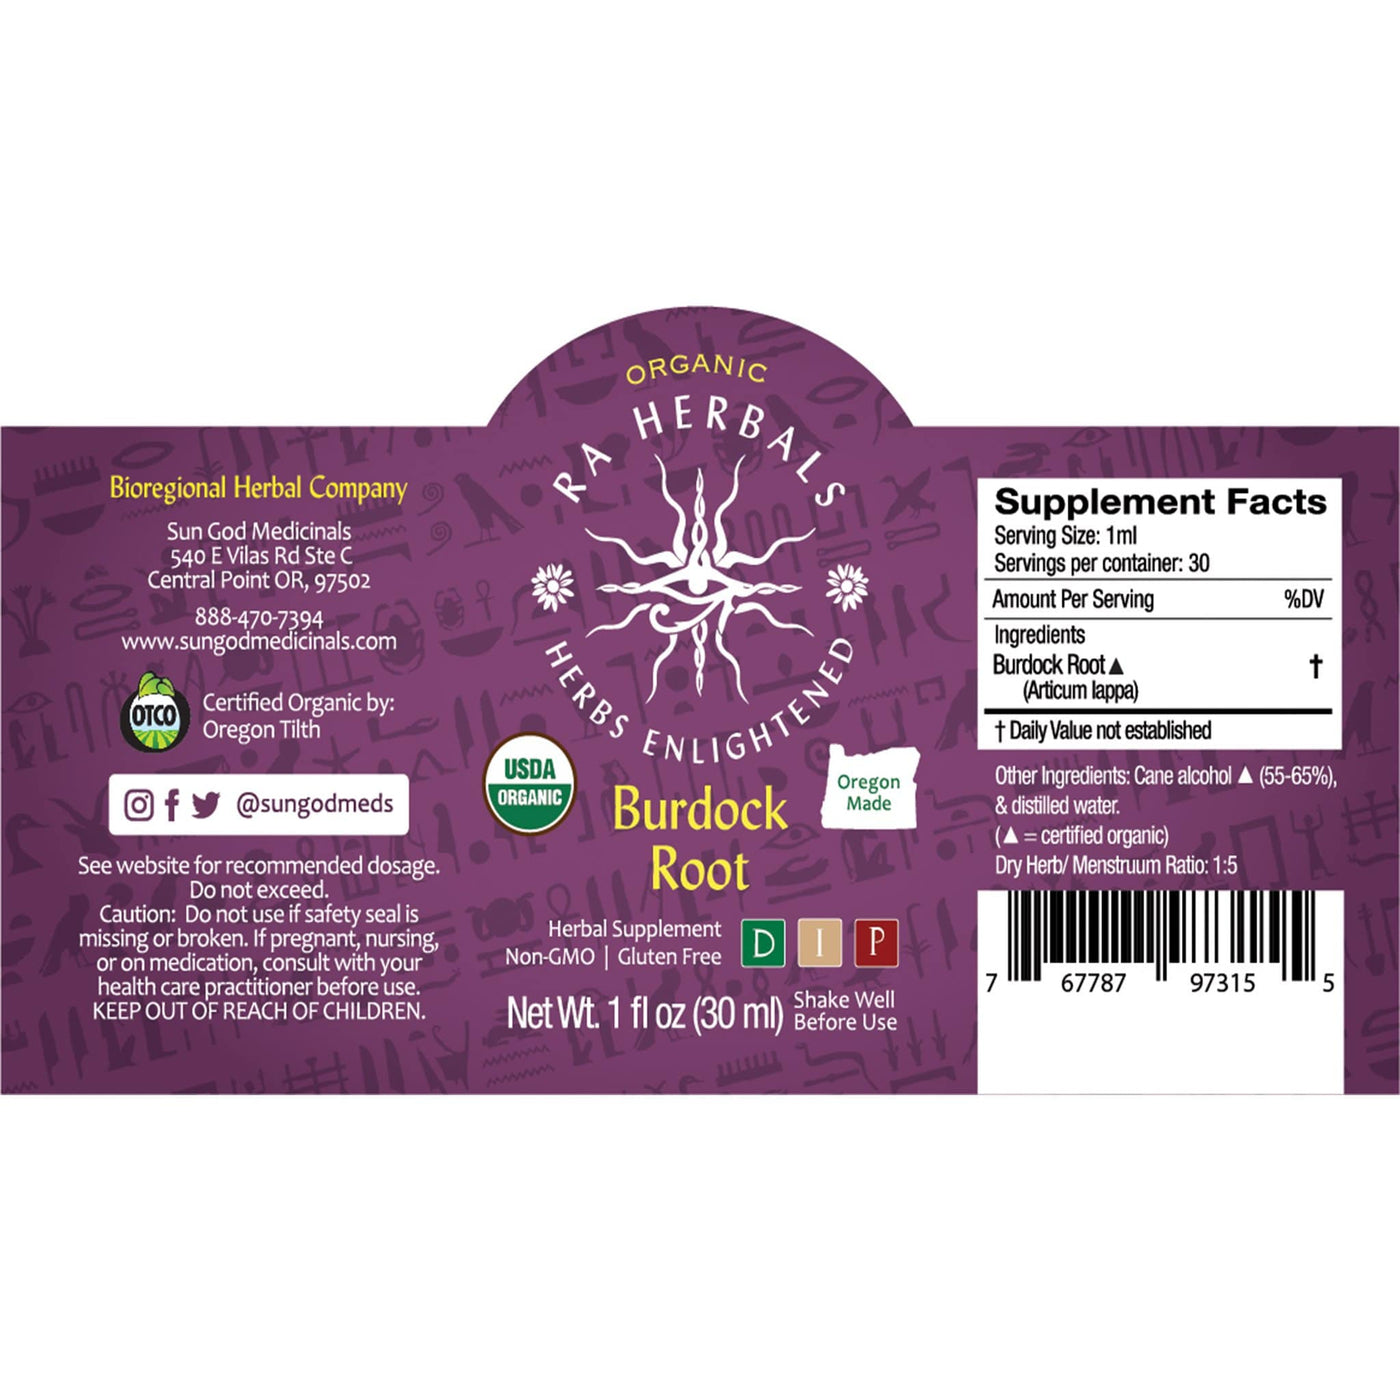 Ra Herbals Certified Organic Burdock Root Tincture - Sun God Medicinals